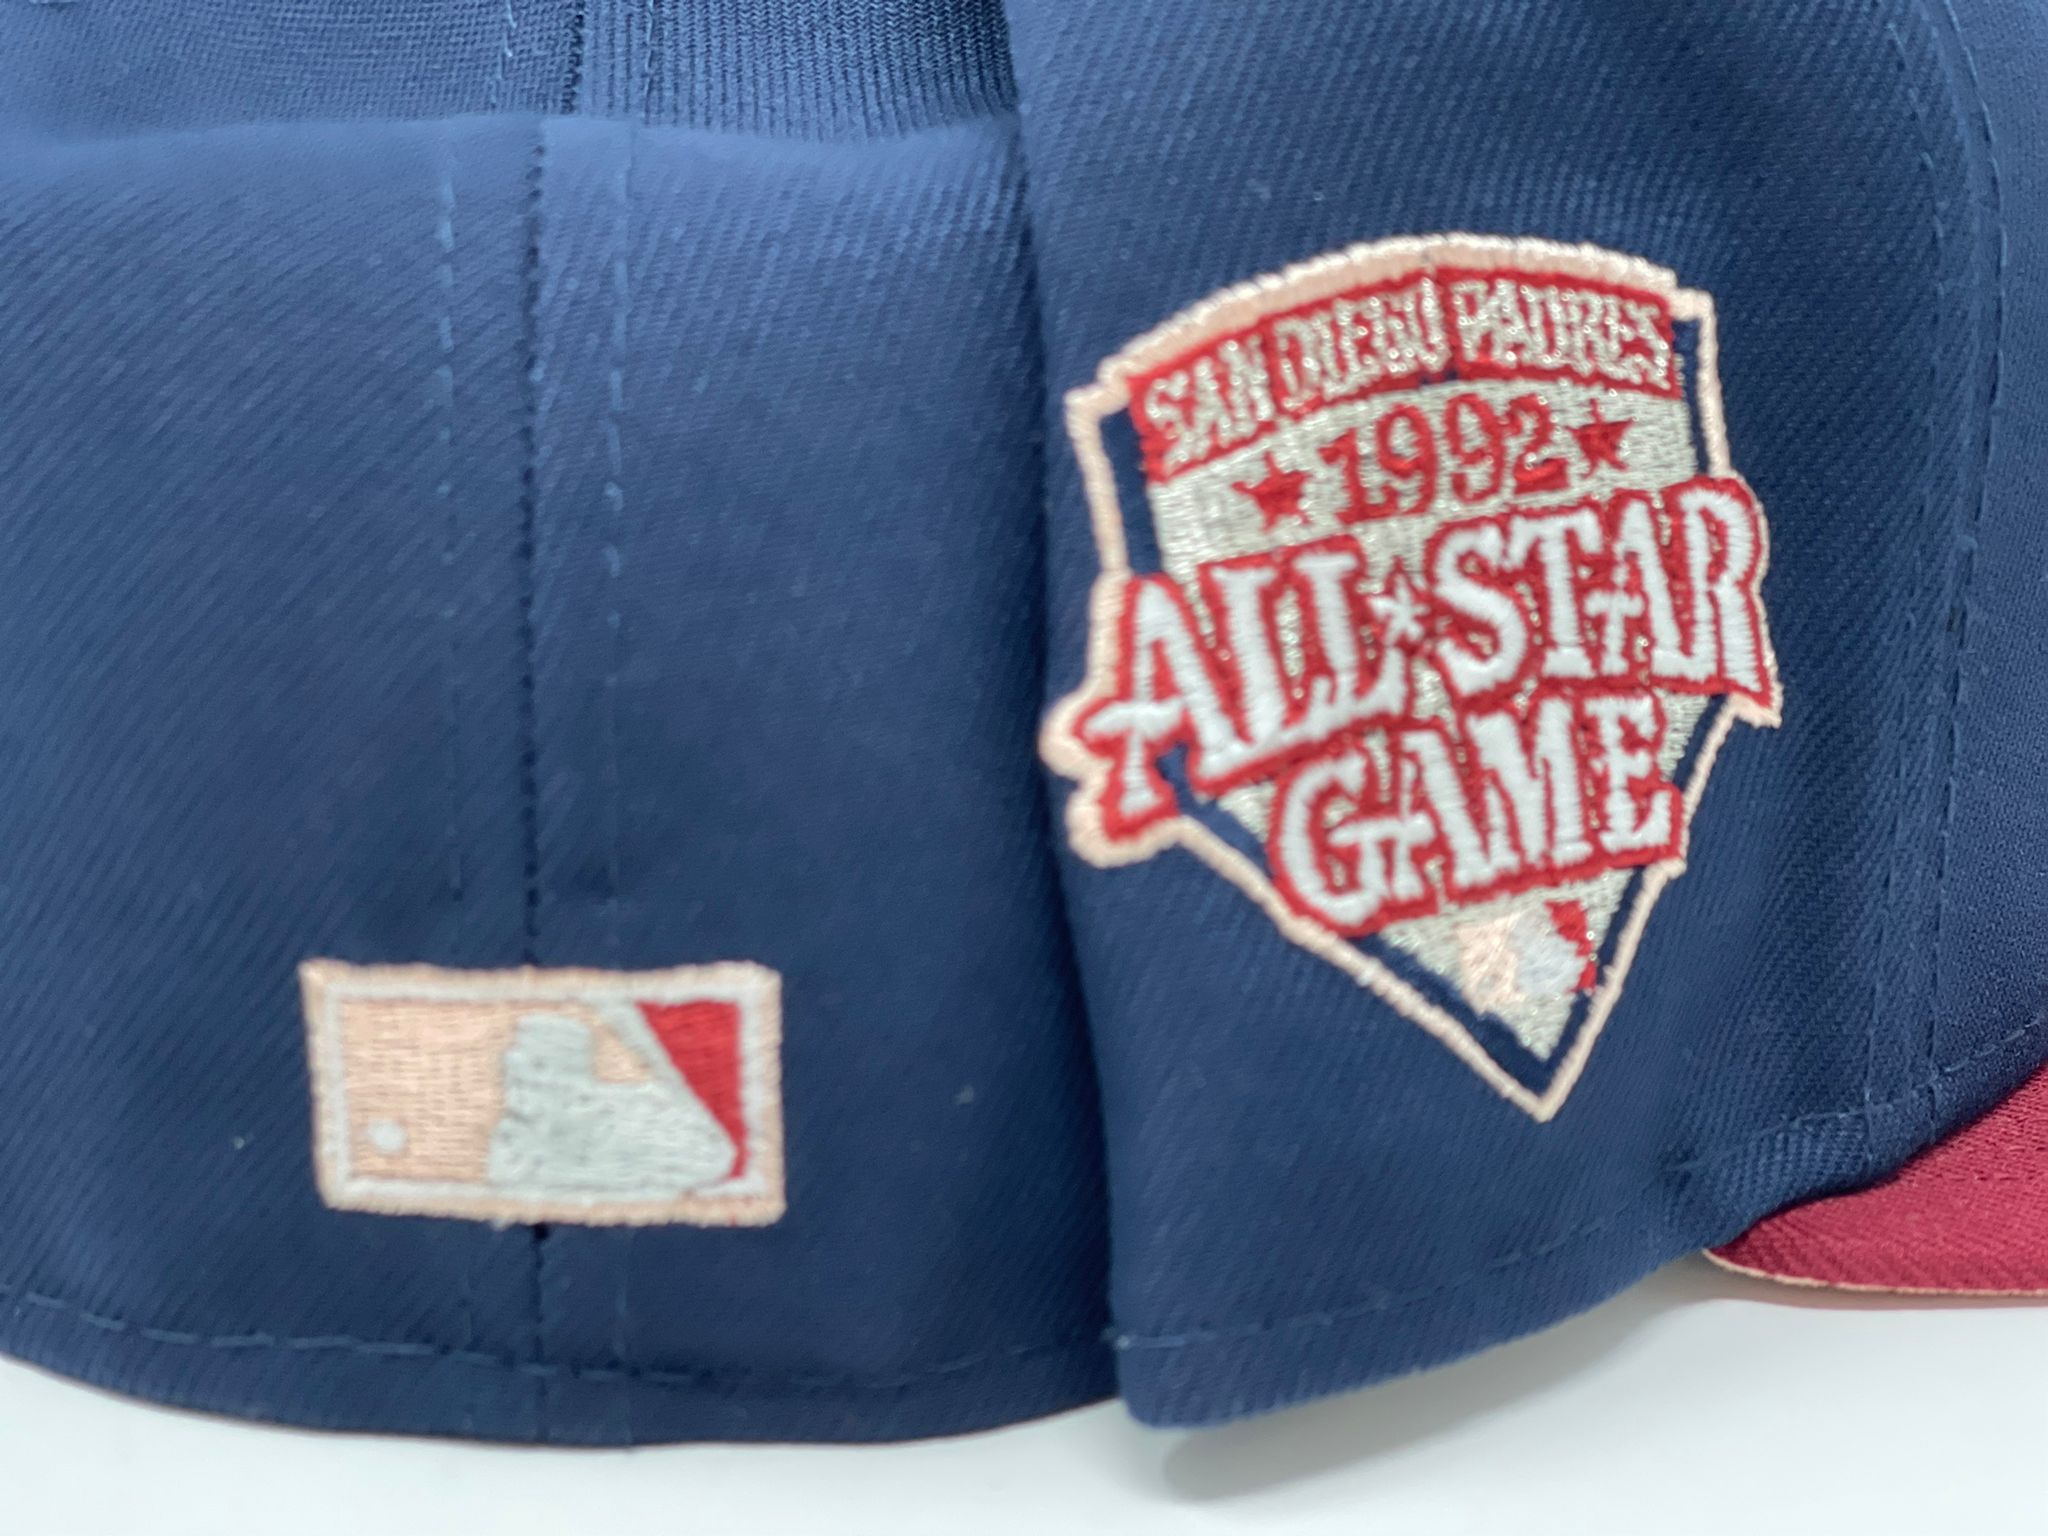 Vintage 1992 San Diego Padres MLB All Star Game TSHIRT - XL – Rad